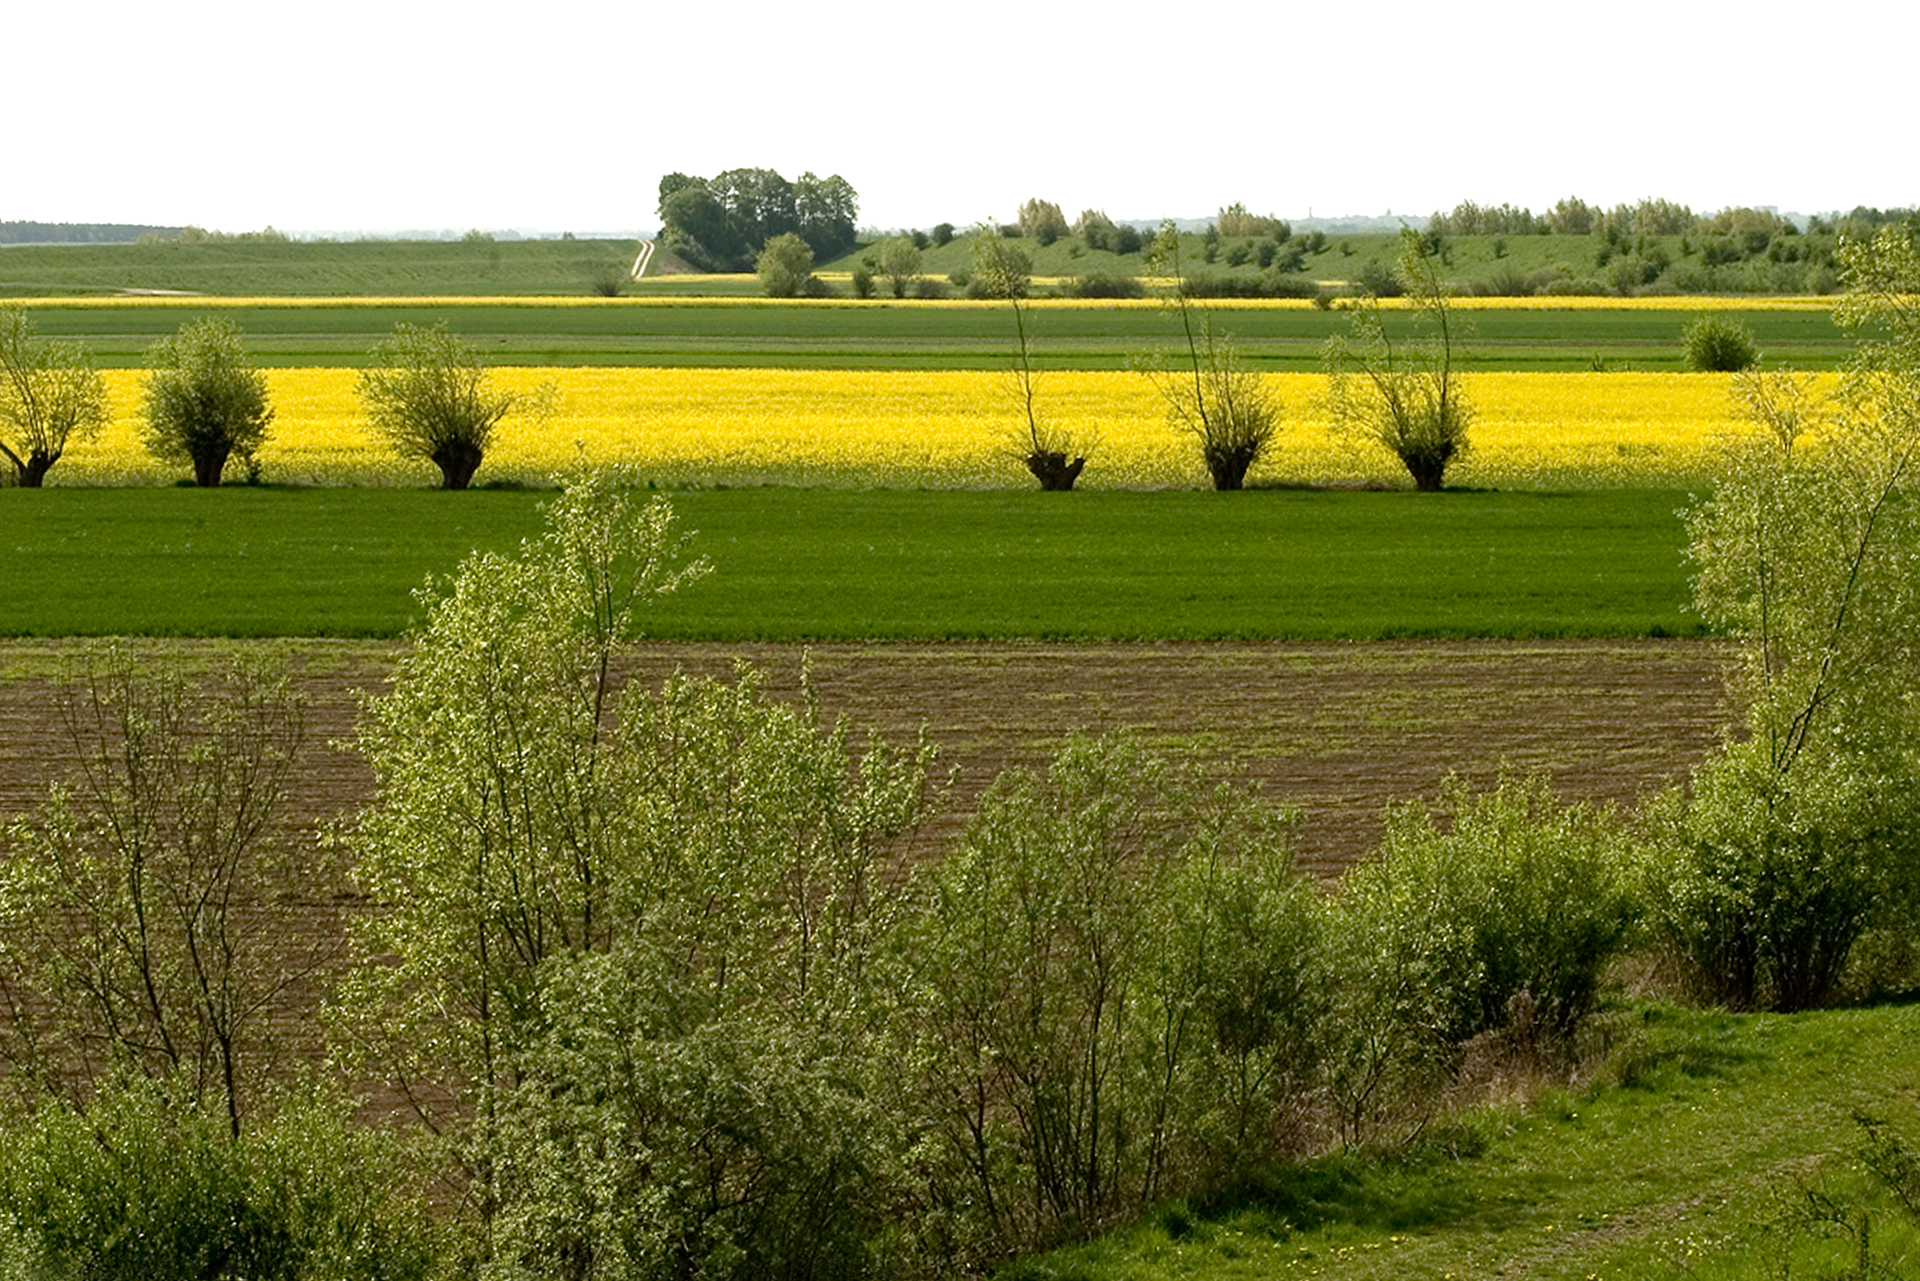 Zdjęcie ukazujące rolniczy krajobraz na równinach Żuław Wiślanych. Na zdjęciu widoczne zielone i żółte pola oraz nieliczne drzewa śródpolne.